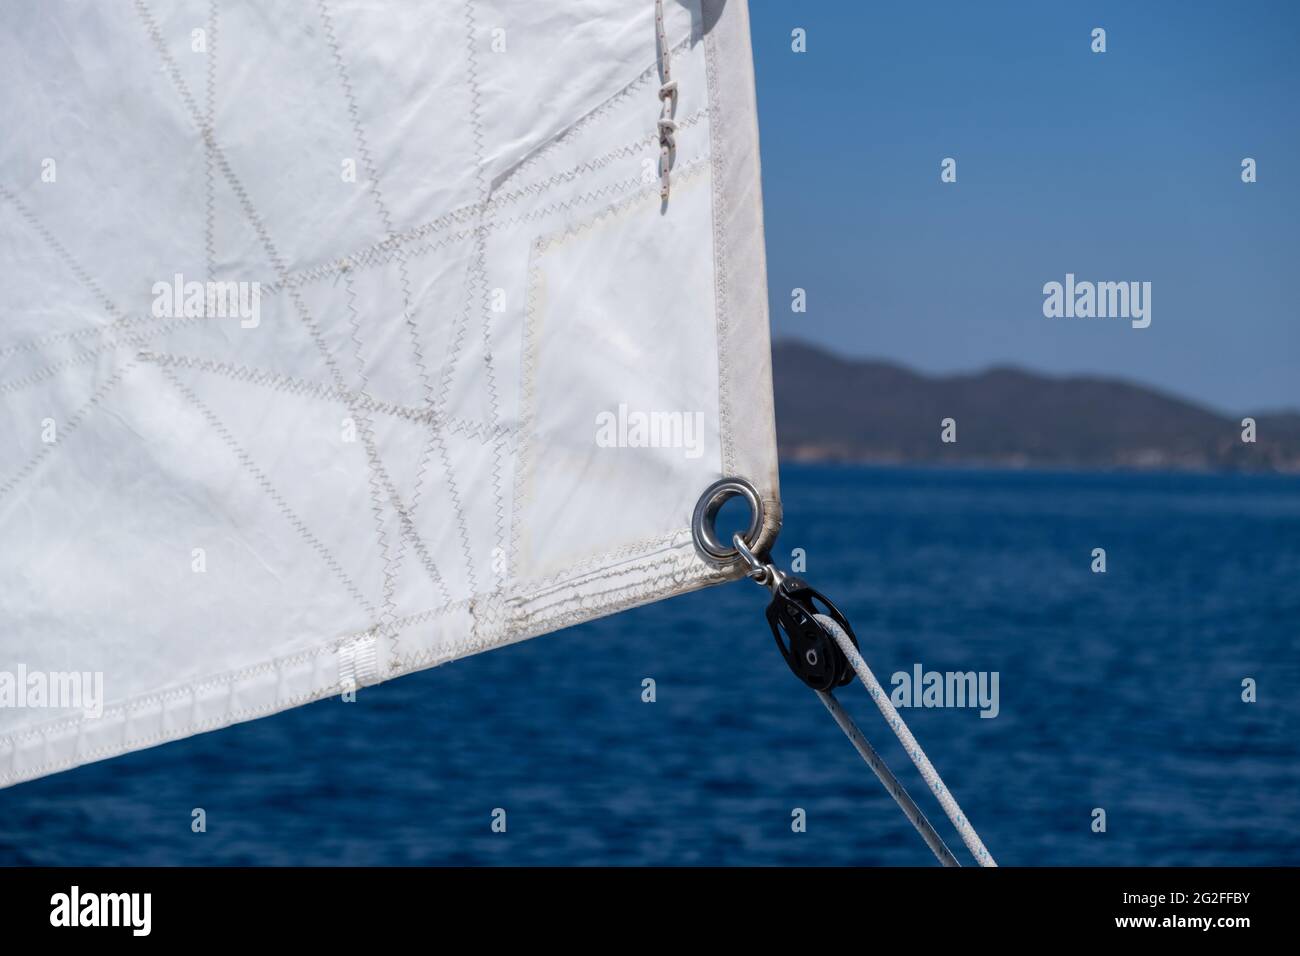 Segeldetails, Öse und Seil in Nahaufnahme. Yacht segelt im offenen ruhigen Ozean Hintergrund. Freizeitangebot, Reise- und Transportkonzept. Stockfoto